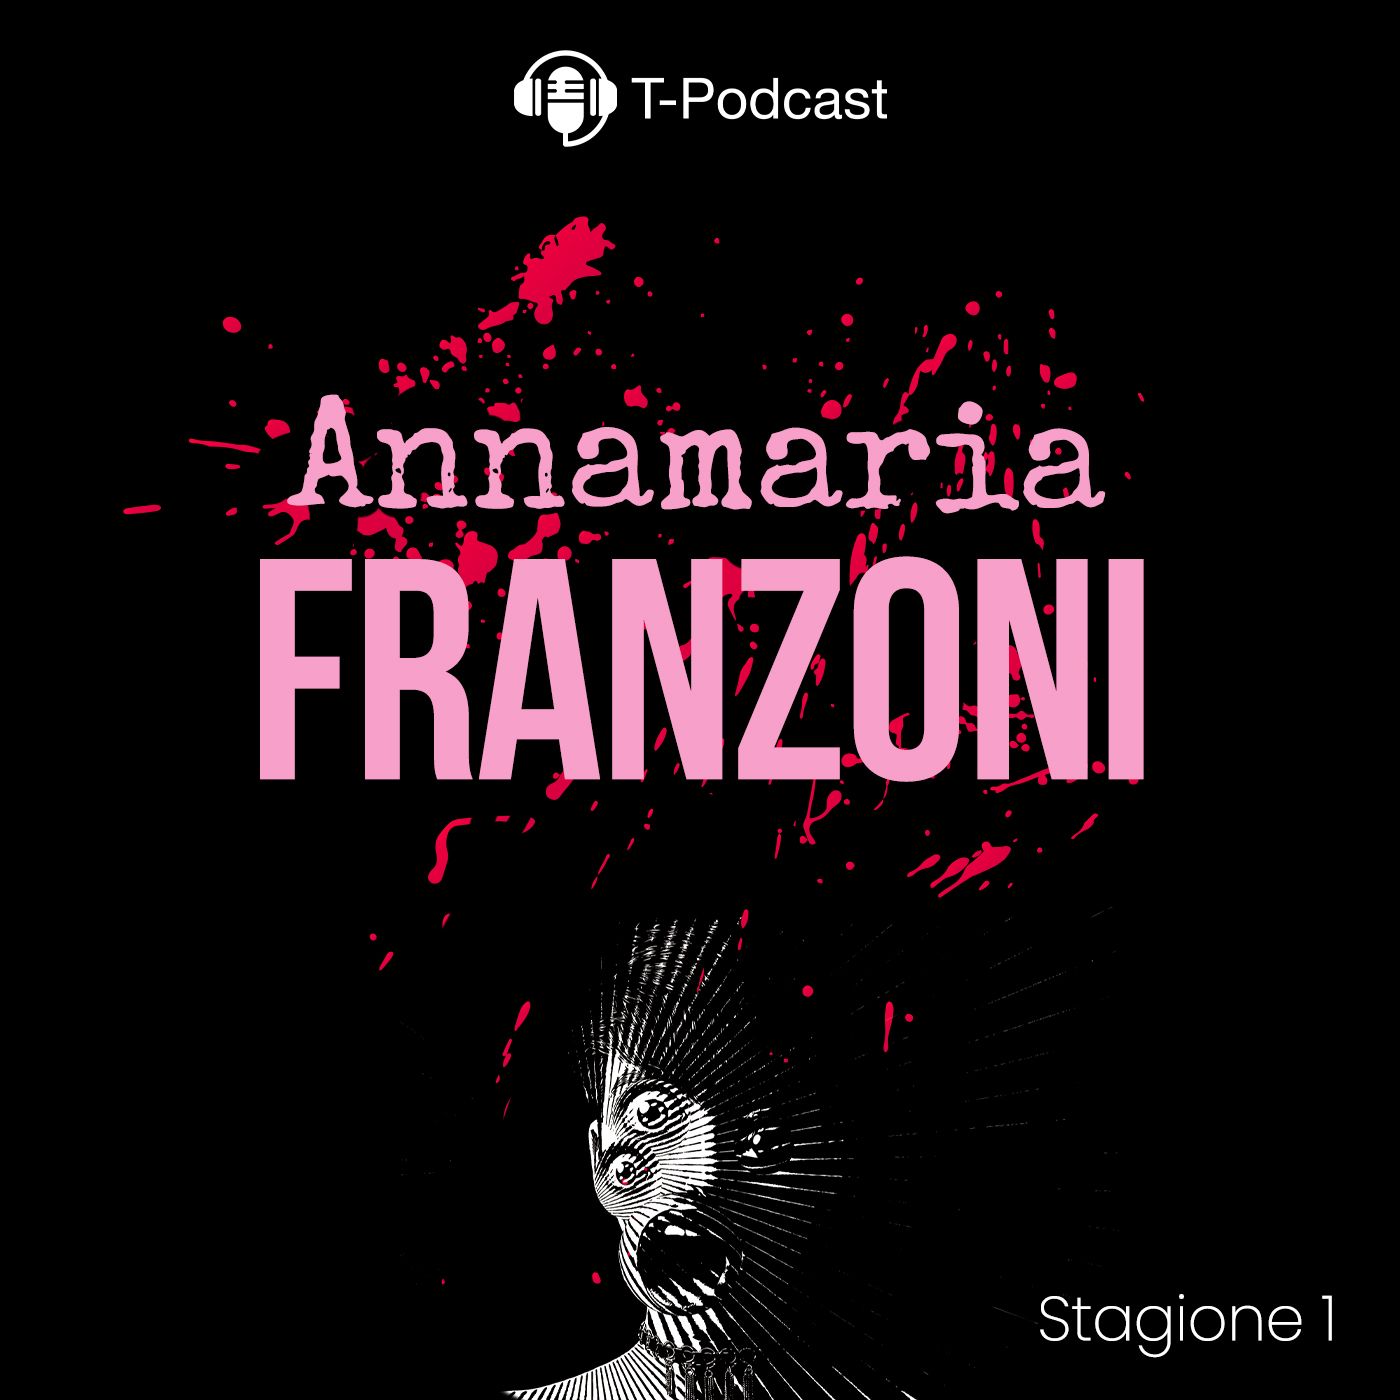 S1 E10 - Annamaria Franzoni